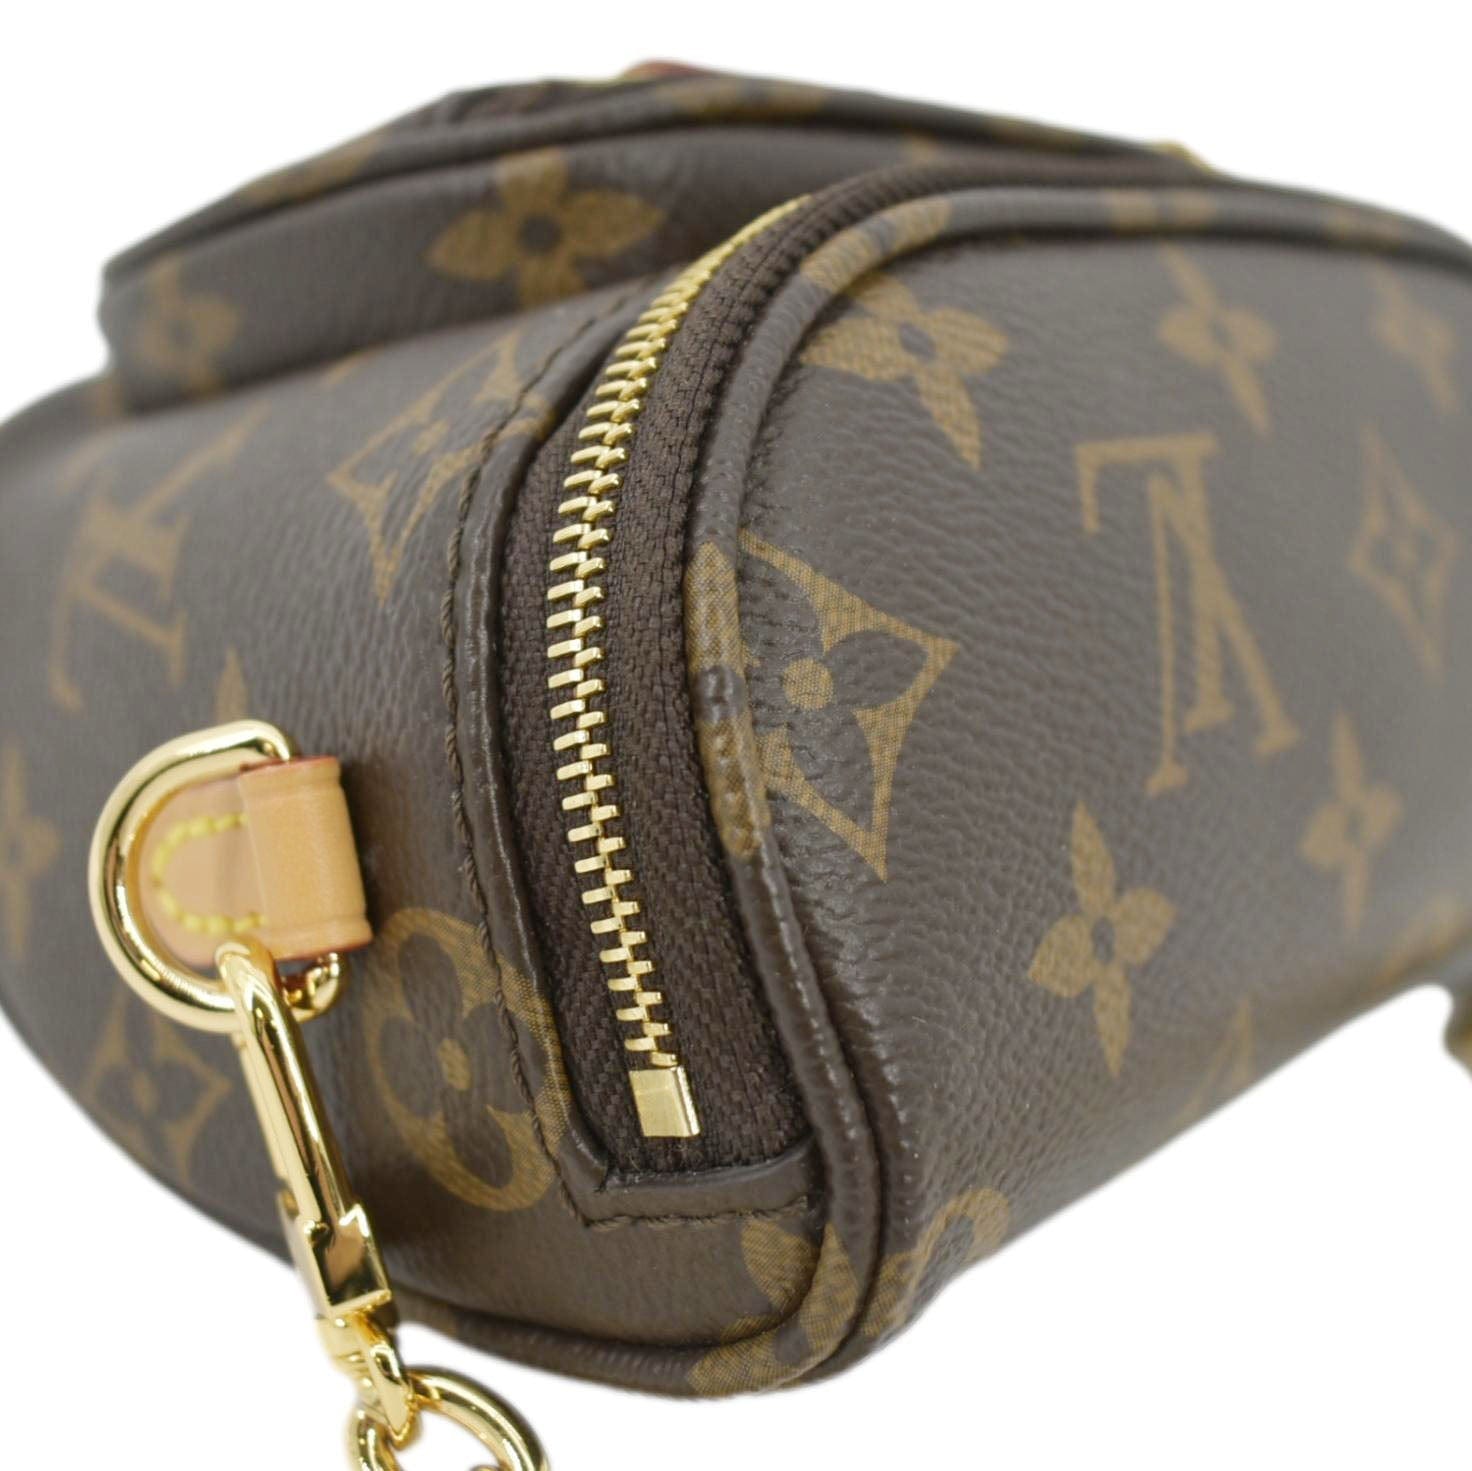 Louis Vuitton Bitsy Pouch Mini Bag w/ Tags - Brown Mini Bags, Handbags -  LOU717472